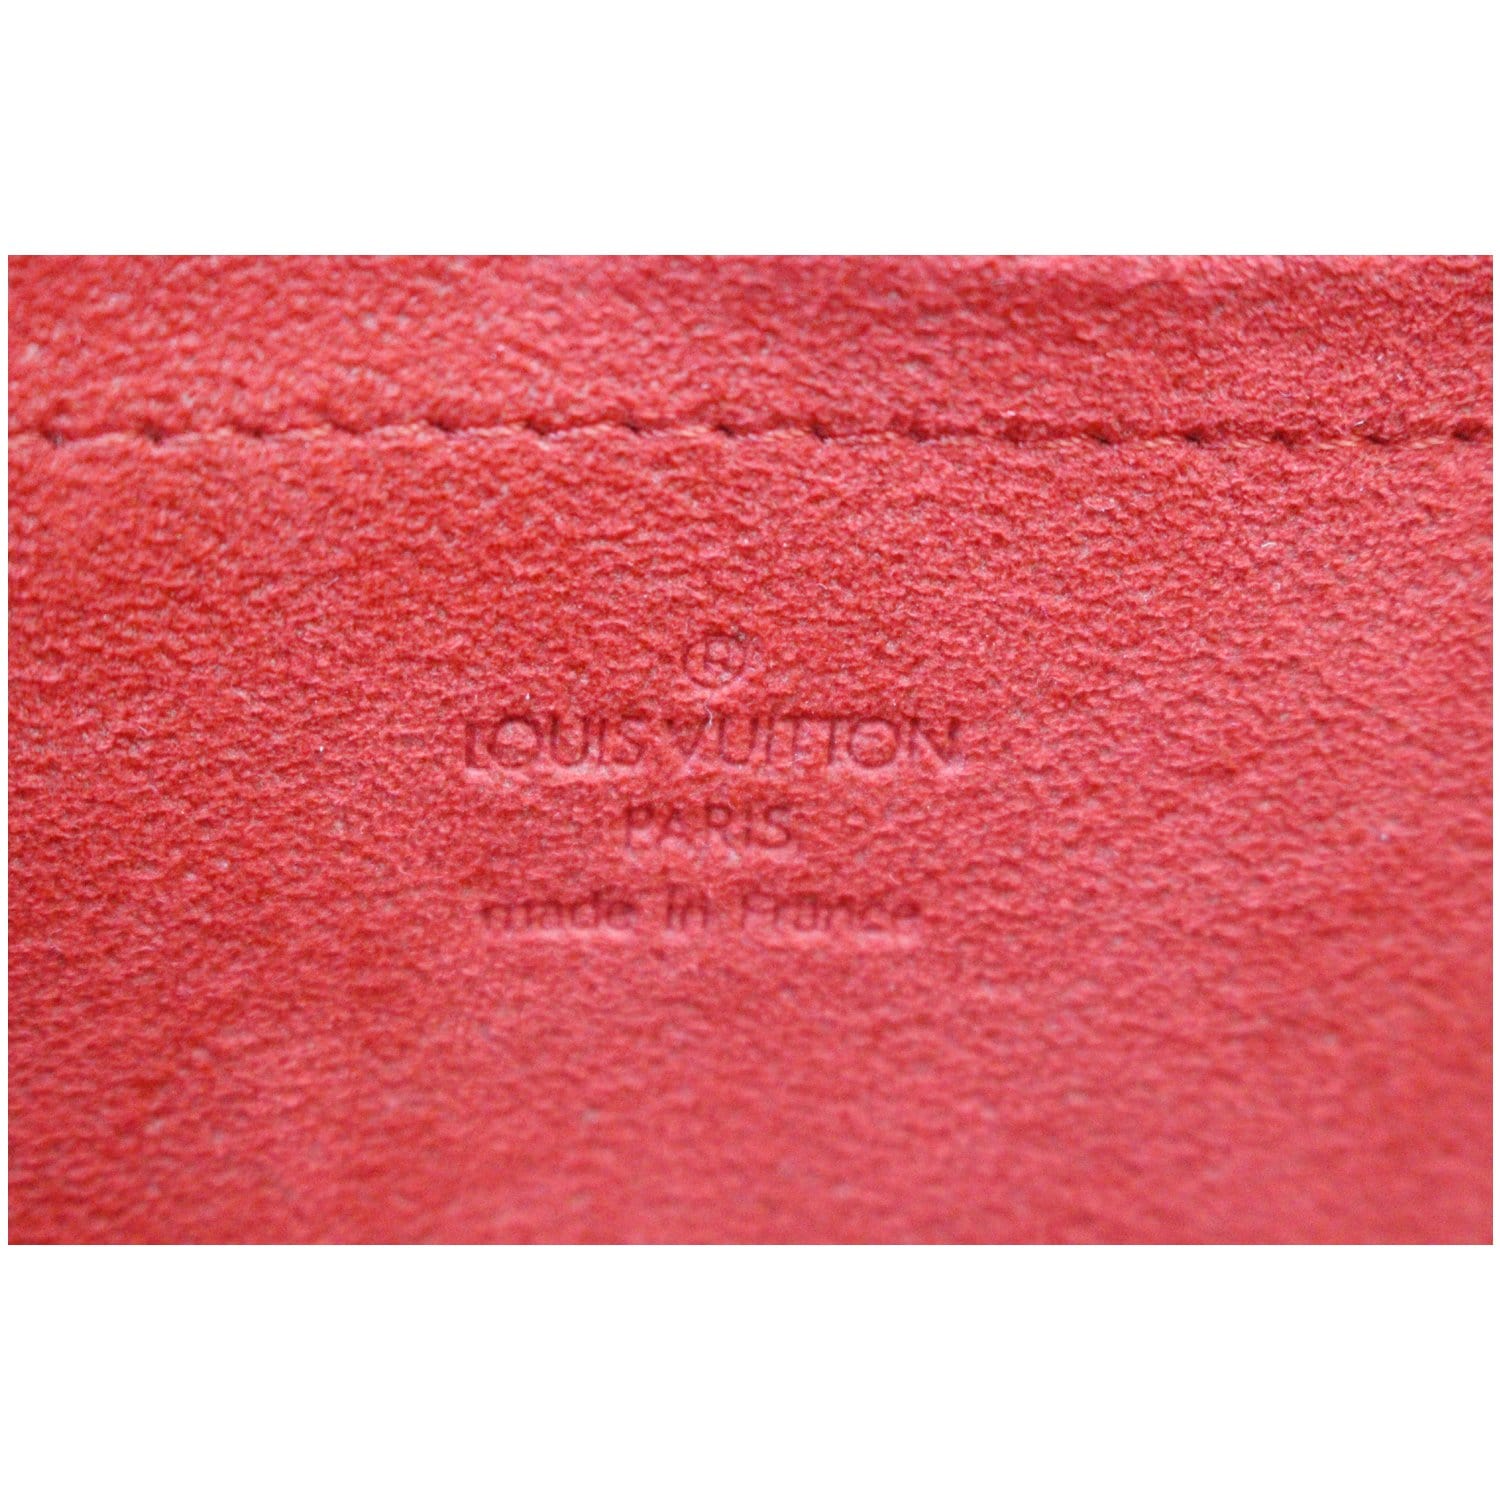 Louis Vuitton Damier Ebene Knightsbridge QJB0WO4V0B000